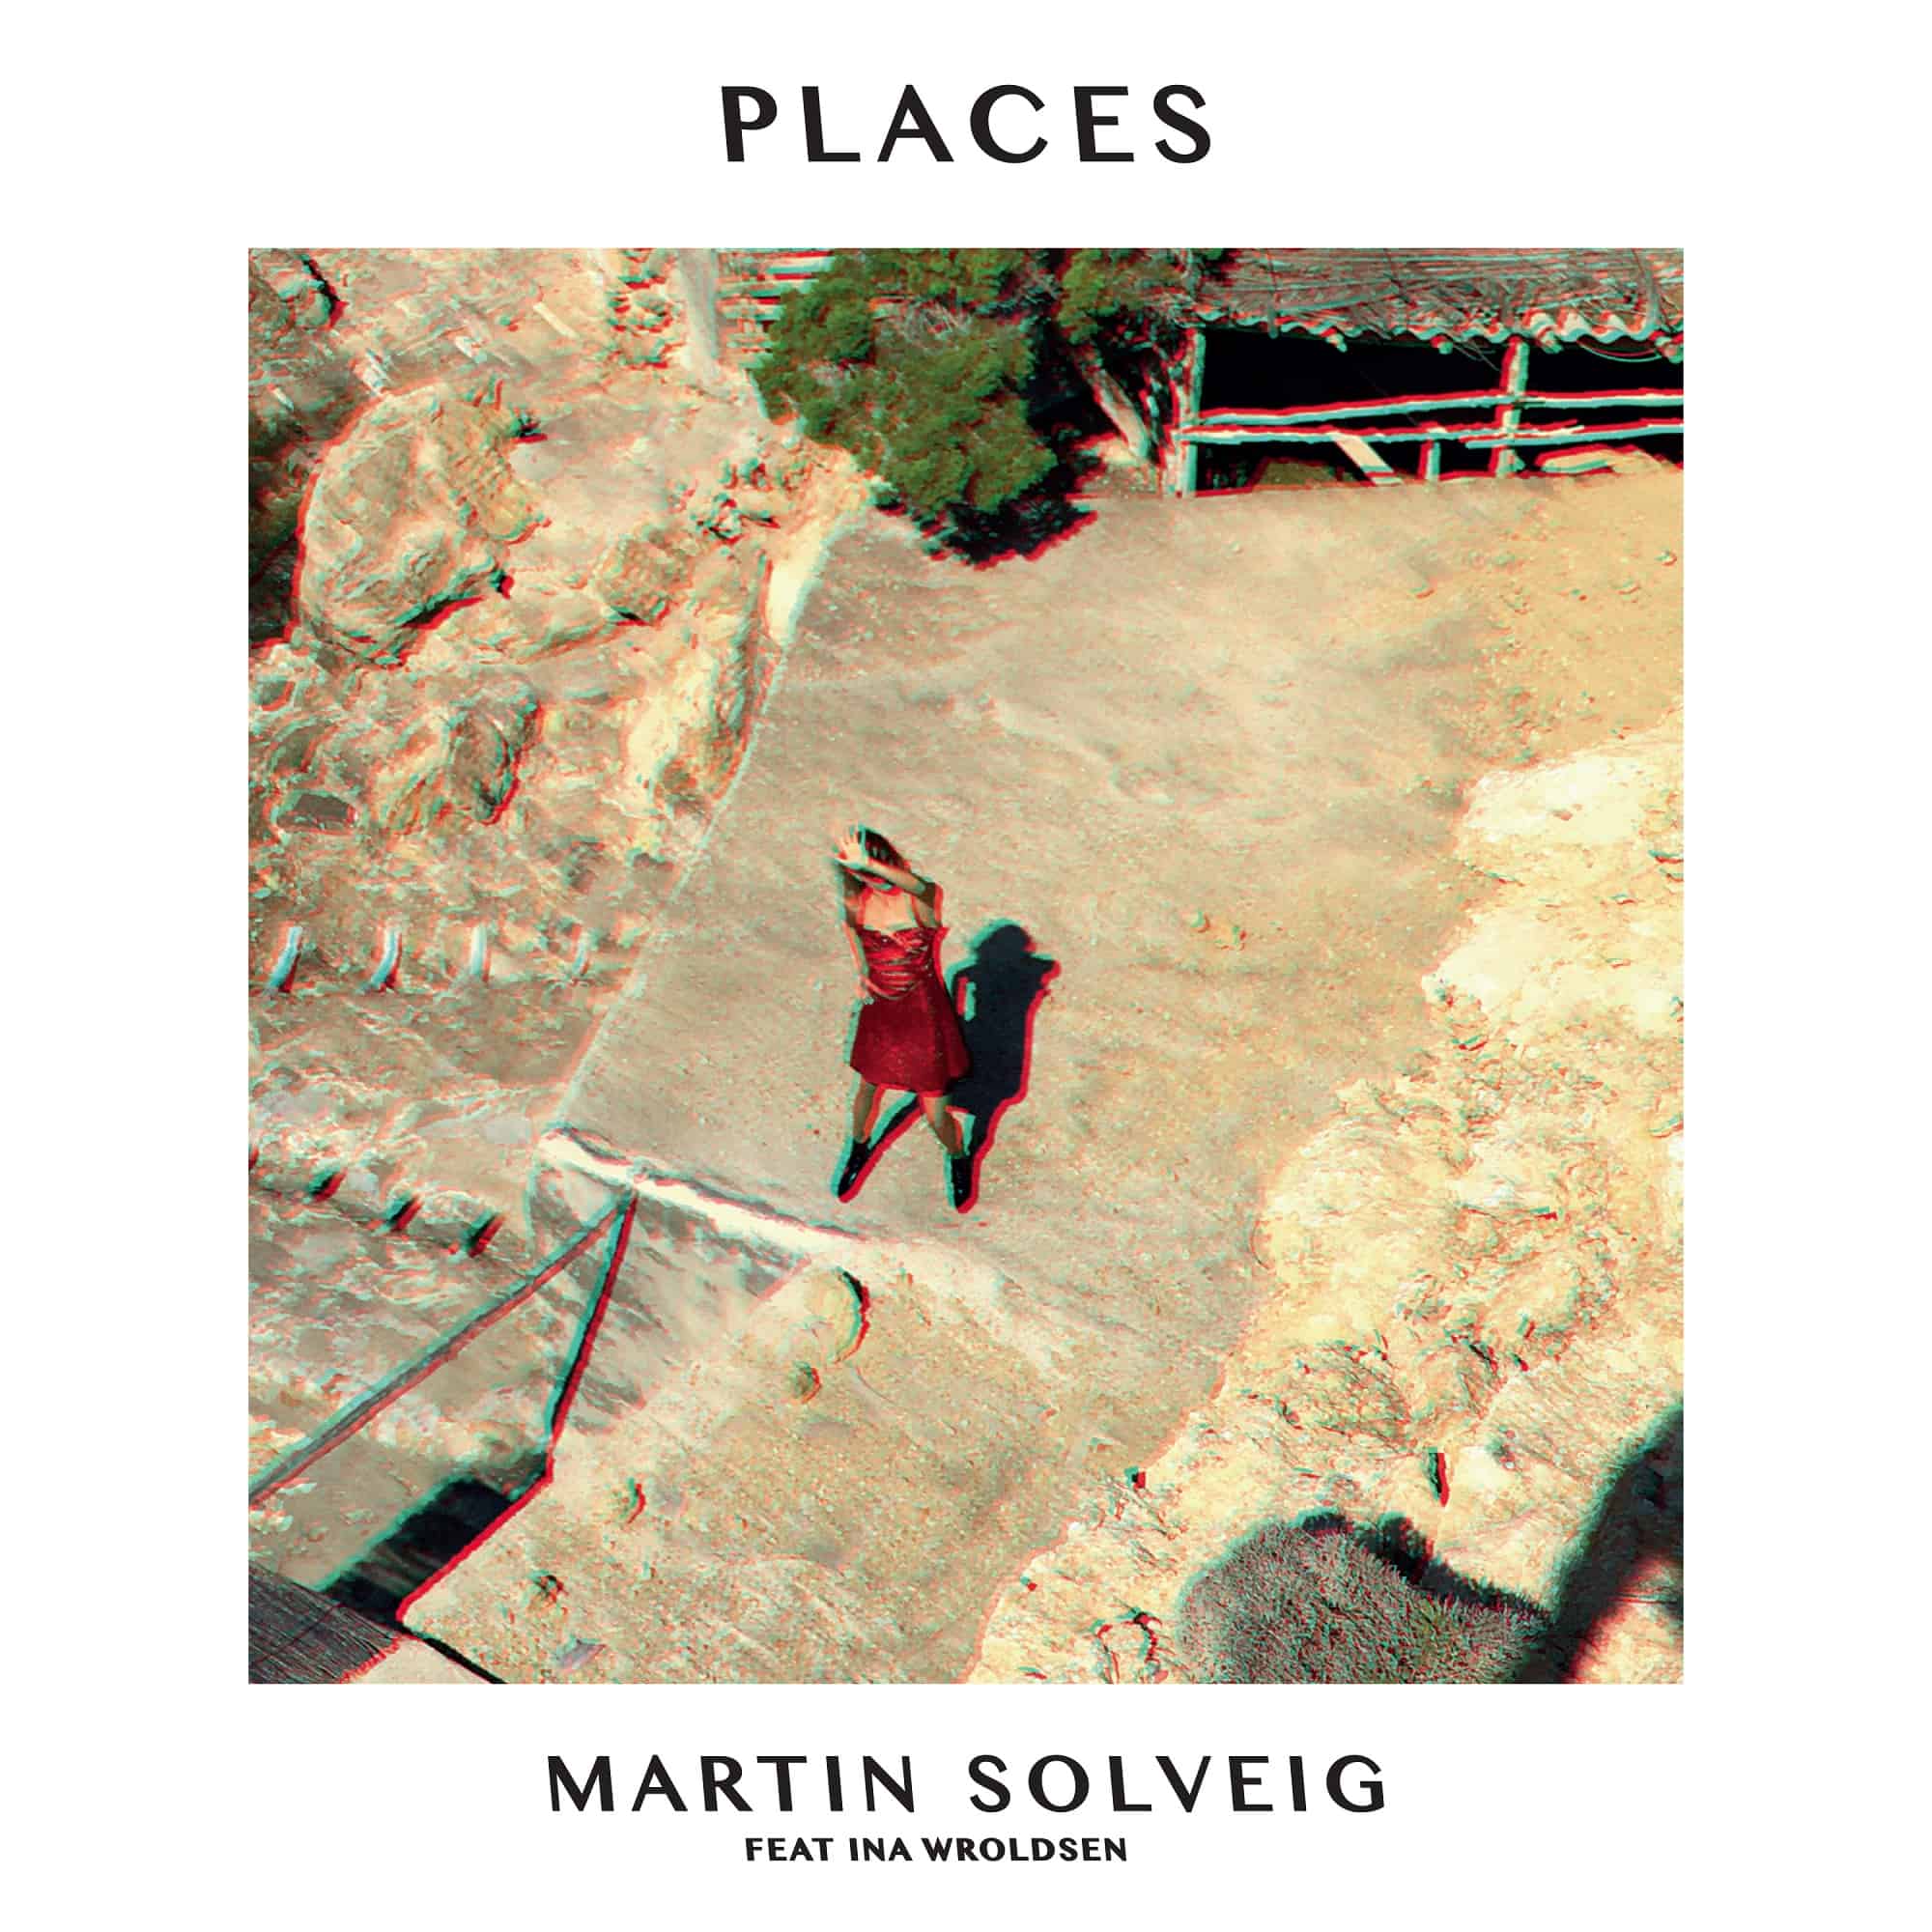 Martin Solveig powraca z nowym singlem!